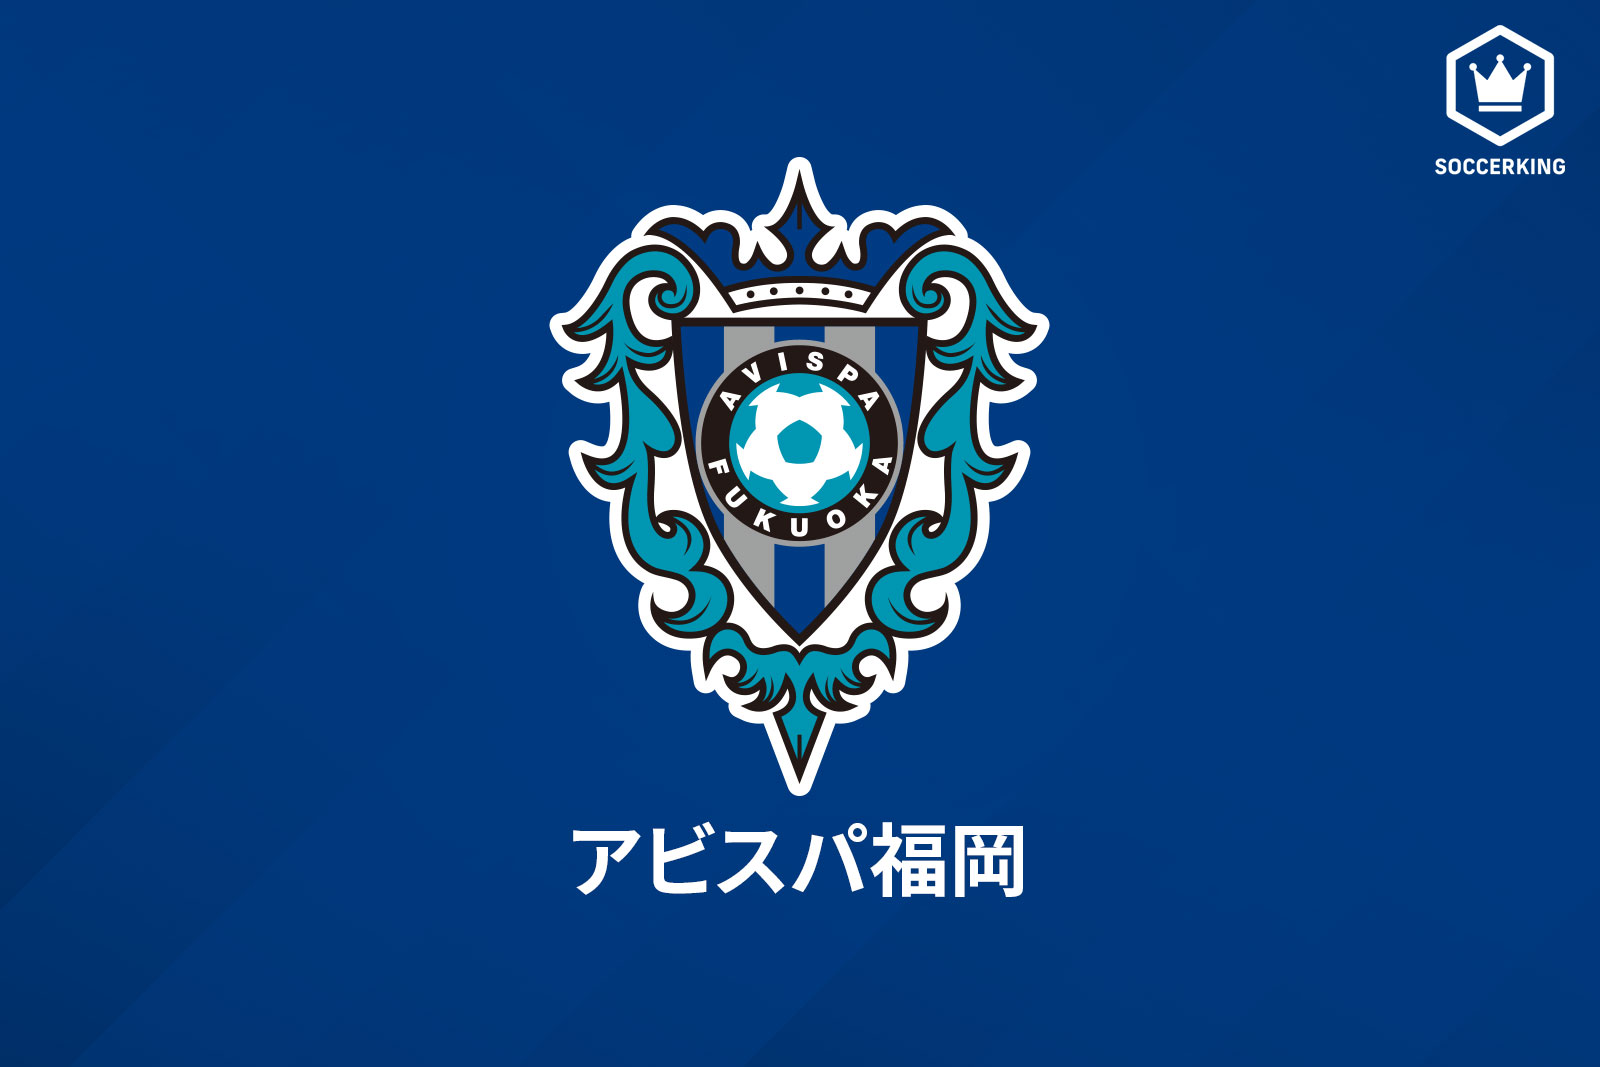 アビスパ福岡が21シーズンの背番号を発表 新加入のb メンデスは 27 サッカーキング